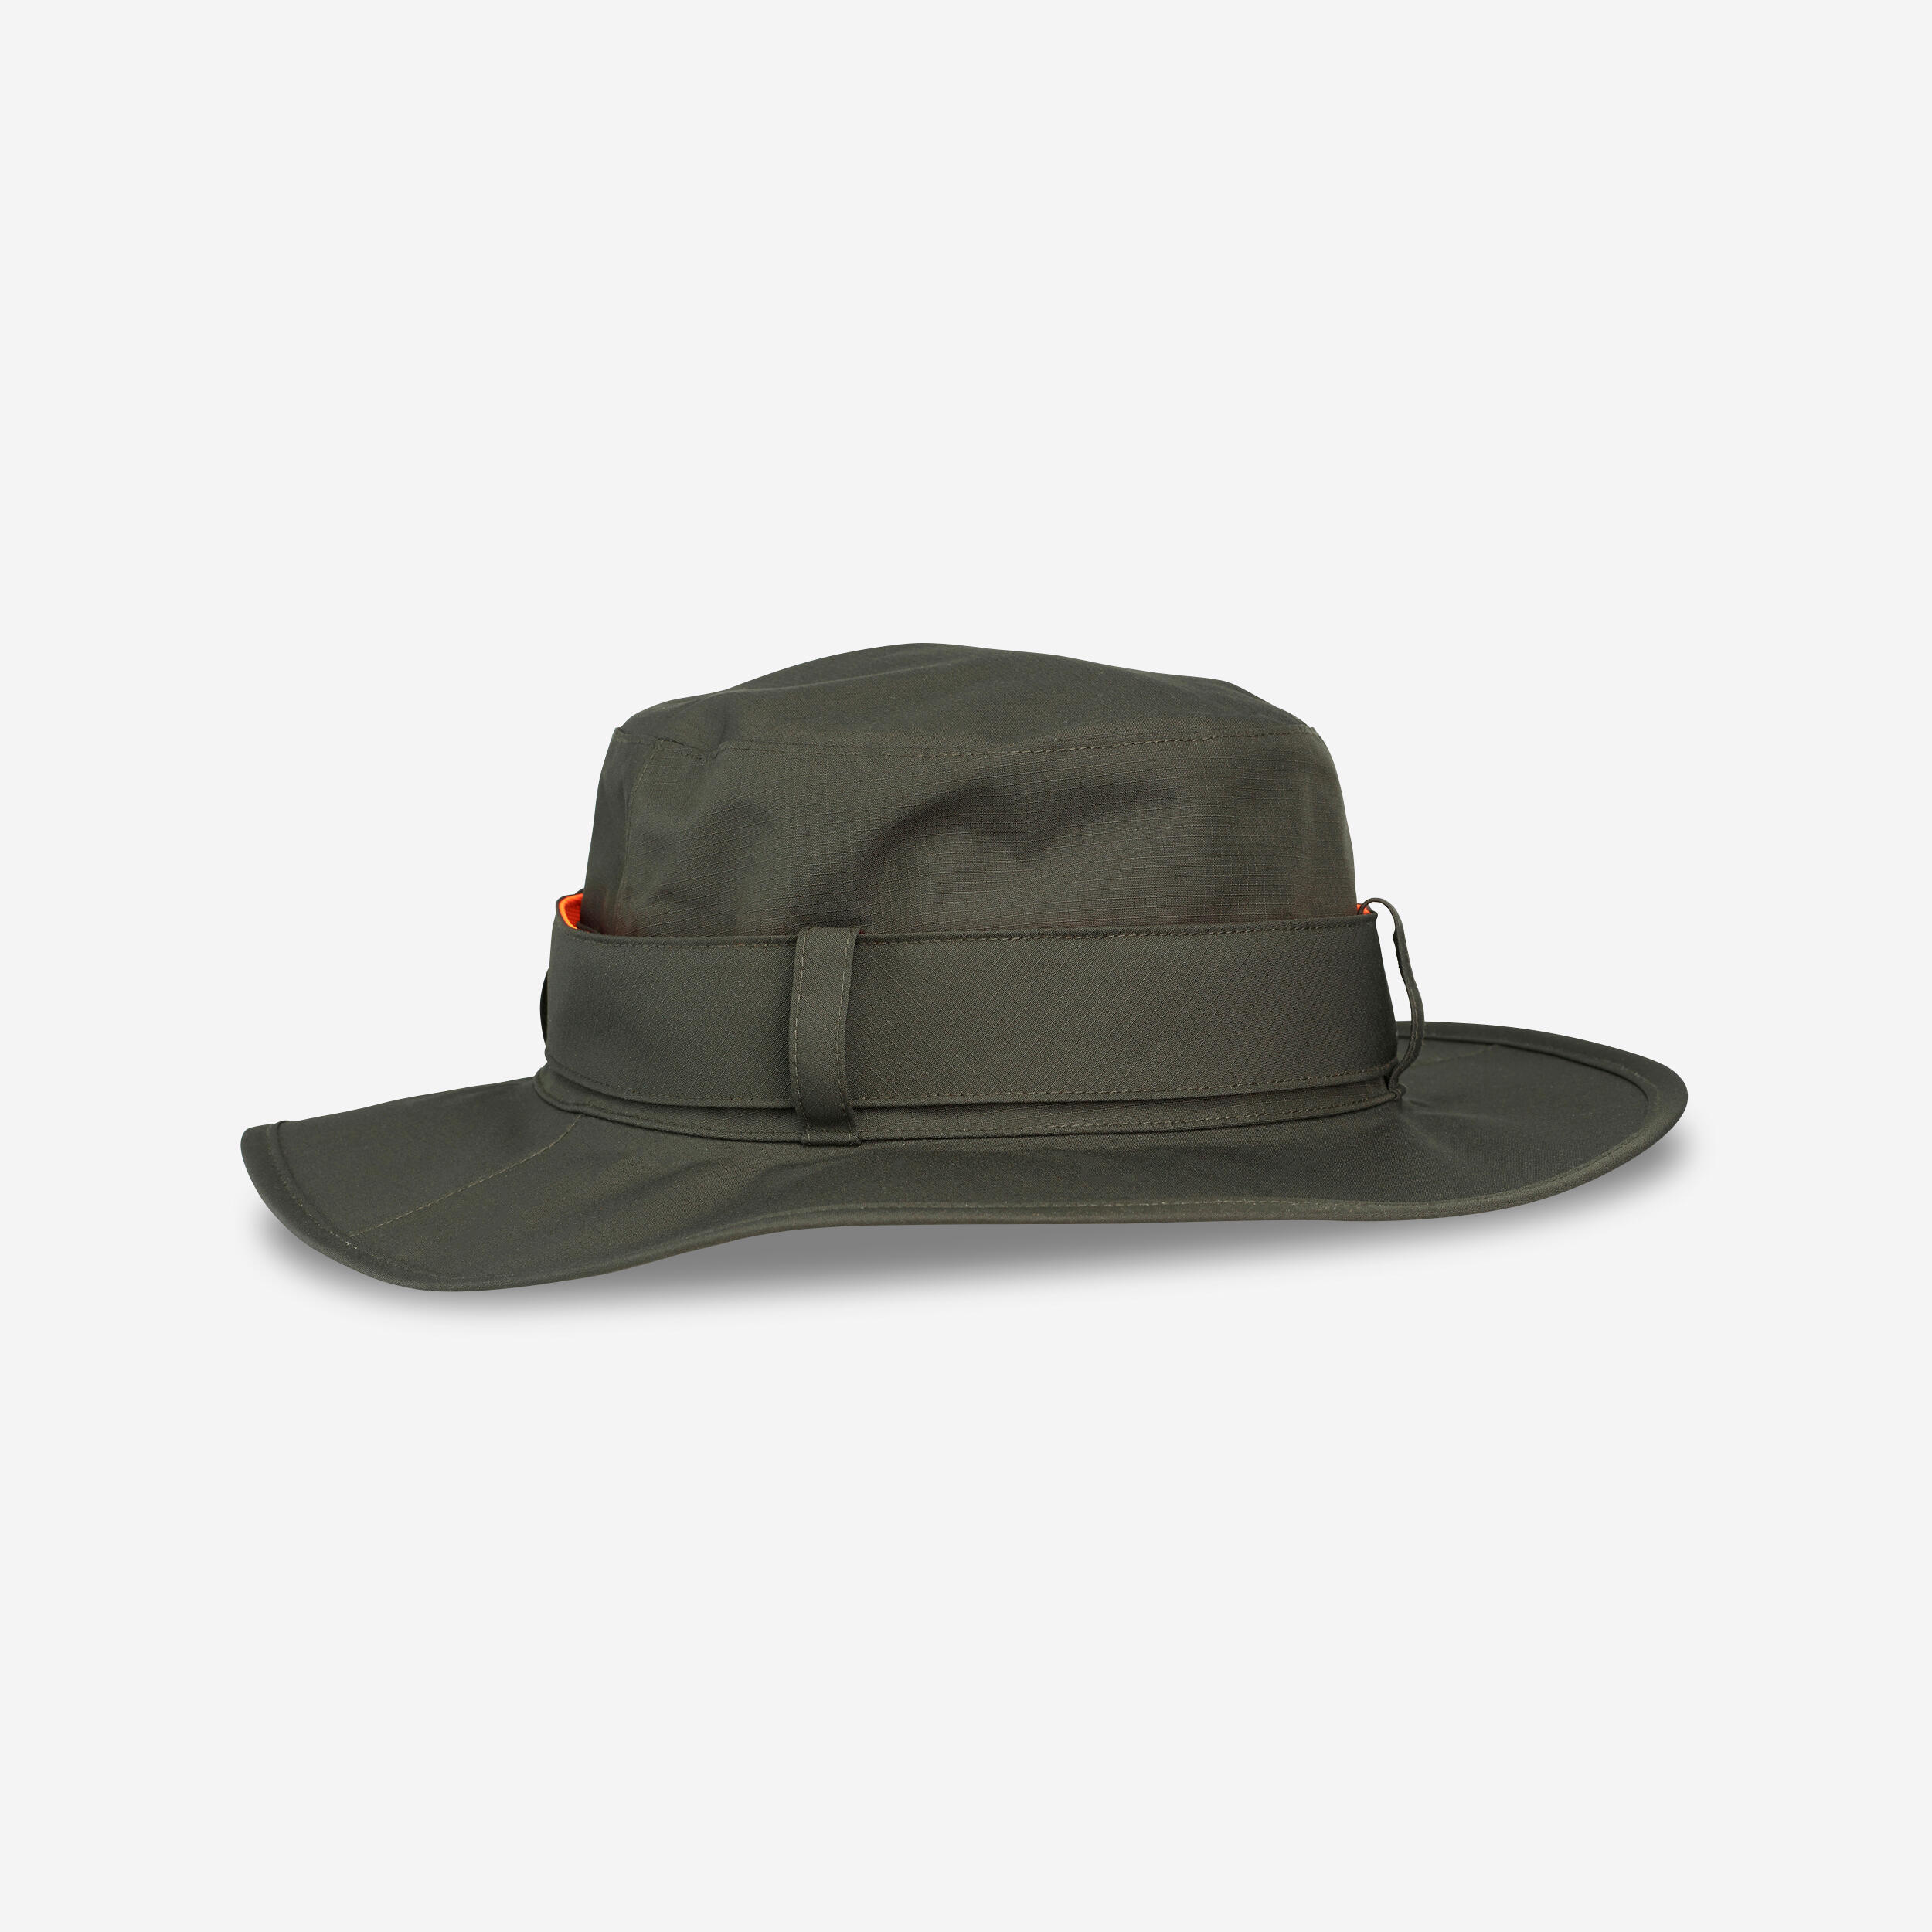 Pălărie SG520 impermeabilă și rezistentă verde bărbați decathlon.ro  Imbracaminte Natura